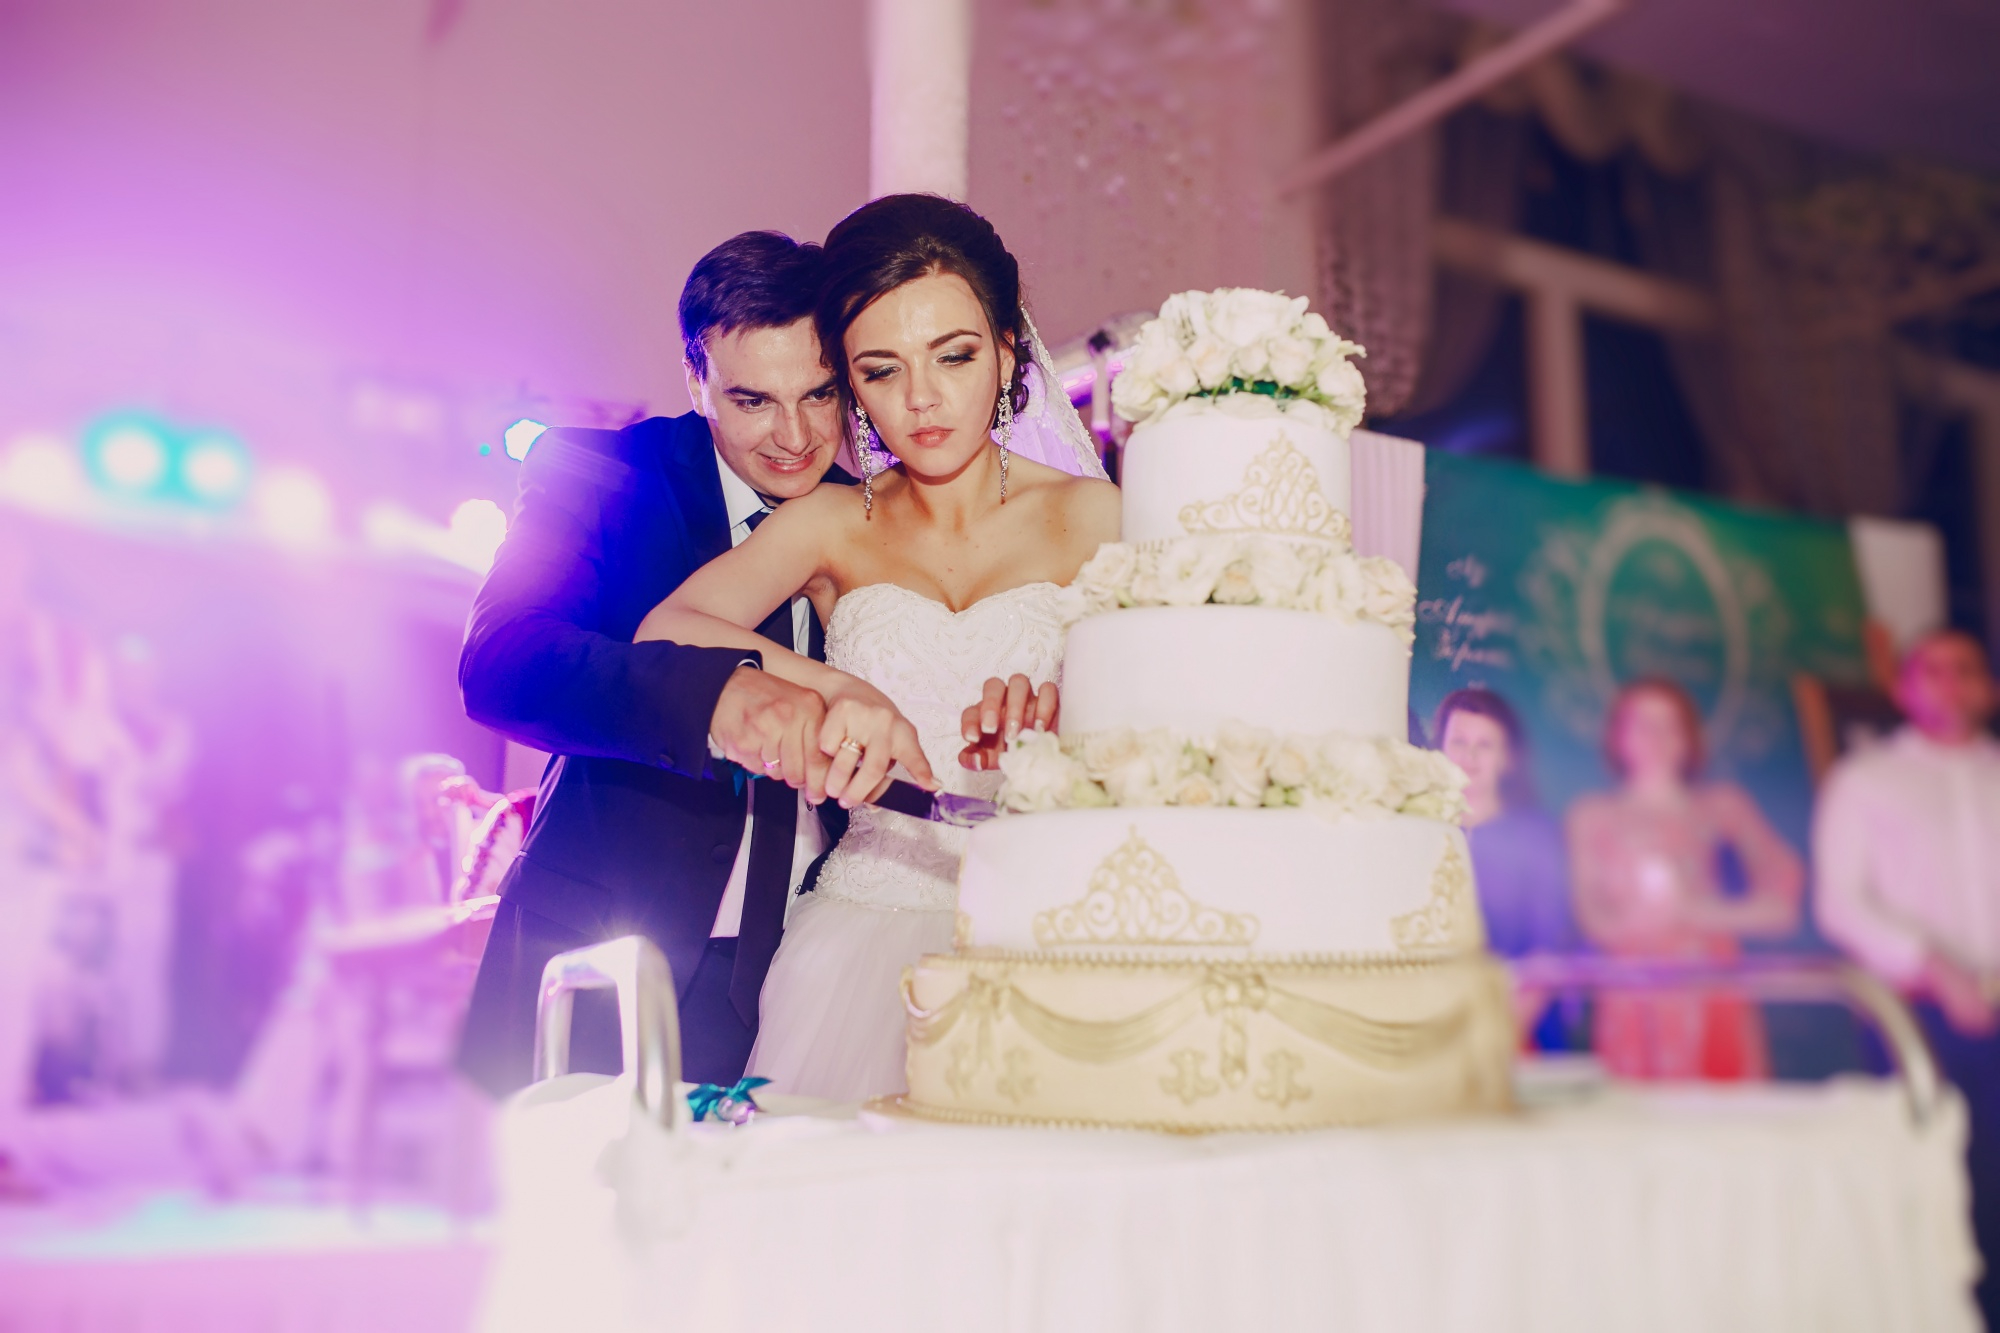 Braut und Bräutigam schneiden ihre Hochzeitstorte an | Quelle: freepik